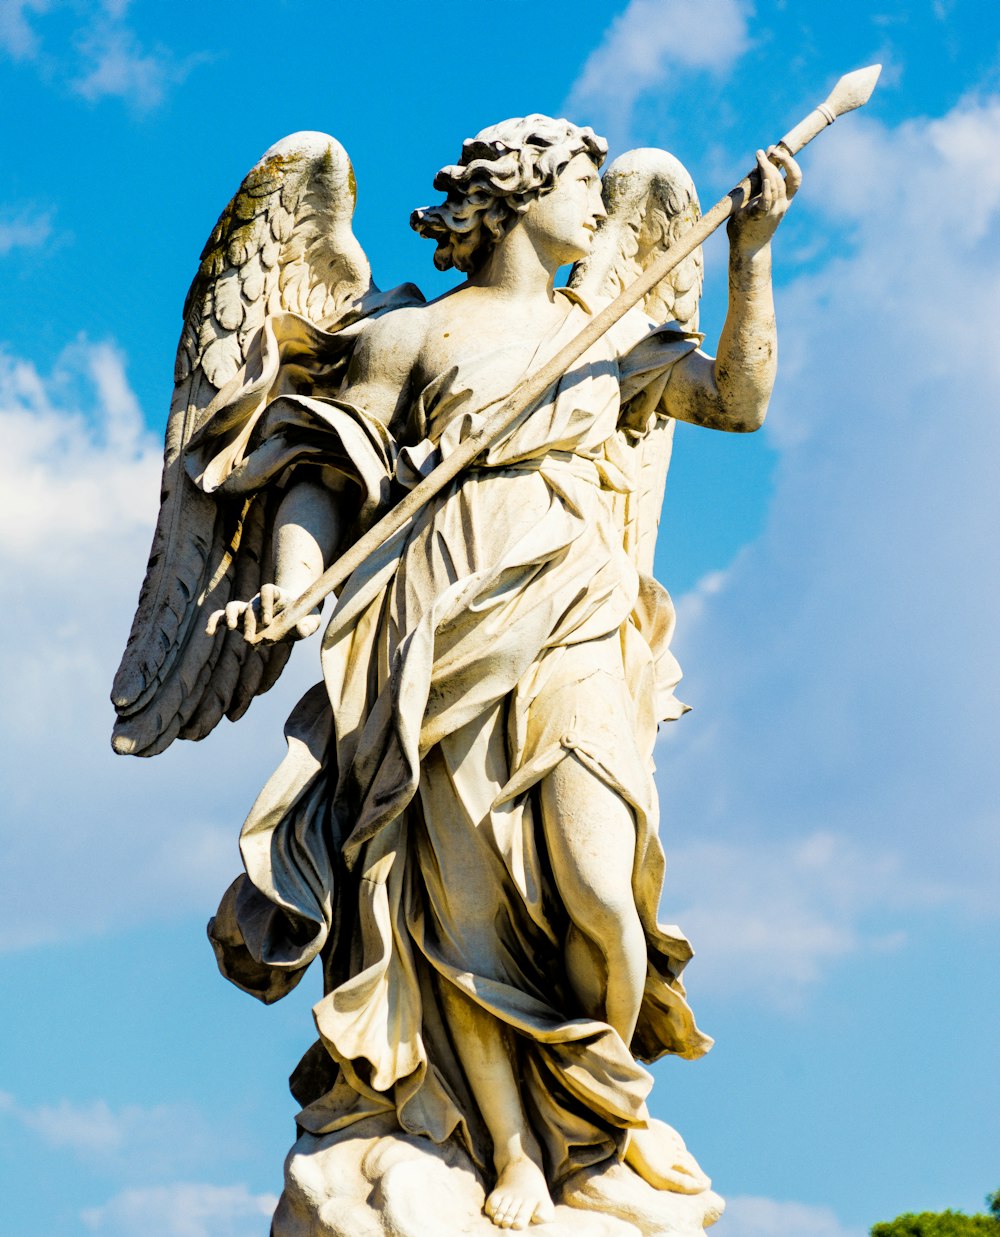 막대기 동상을 들고 있는 천사